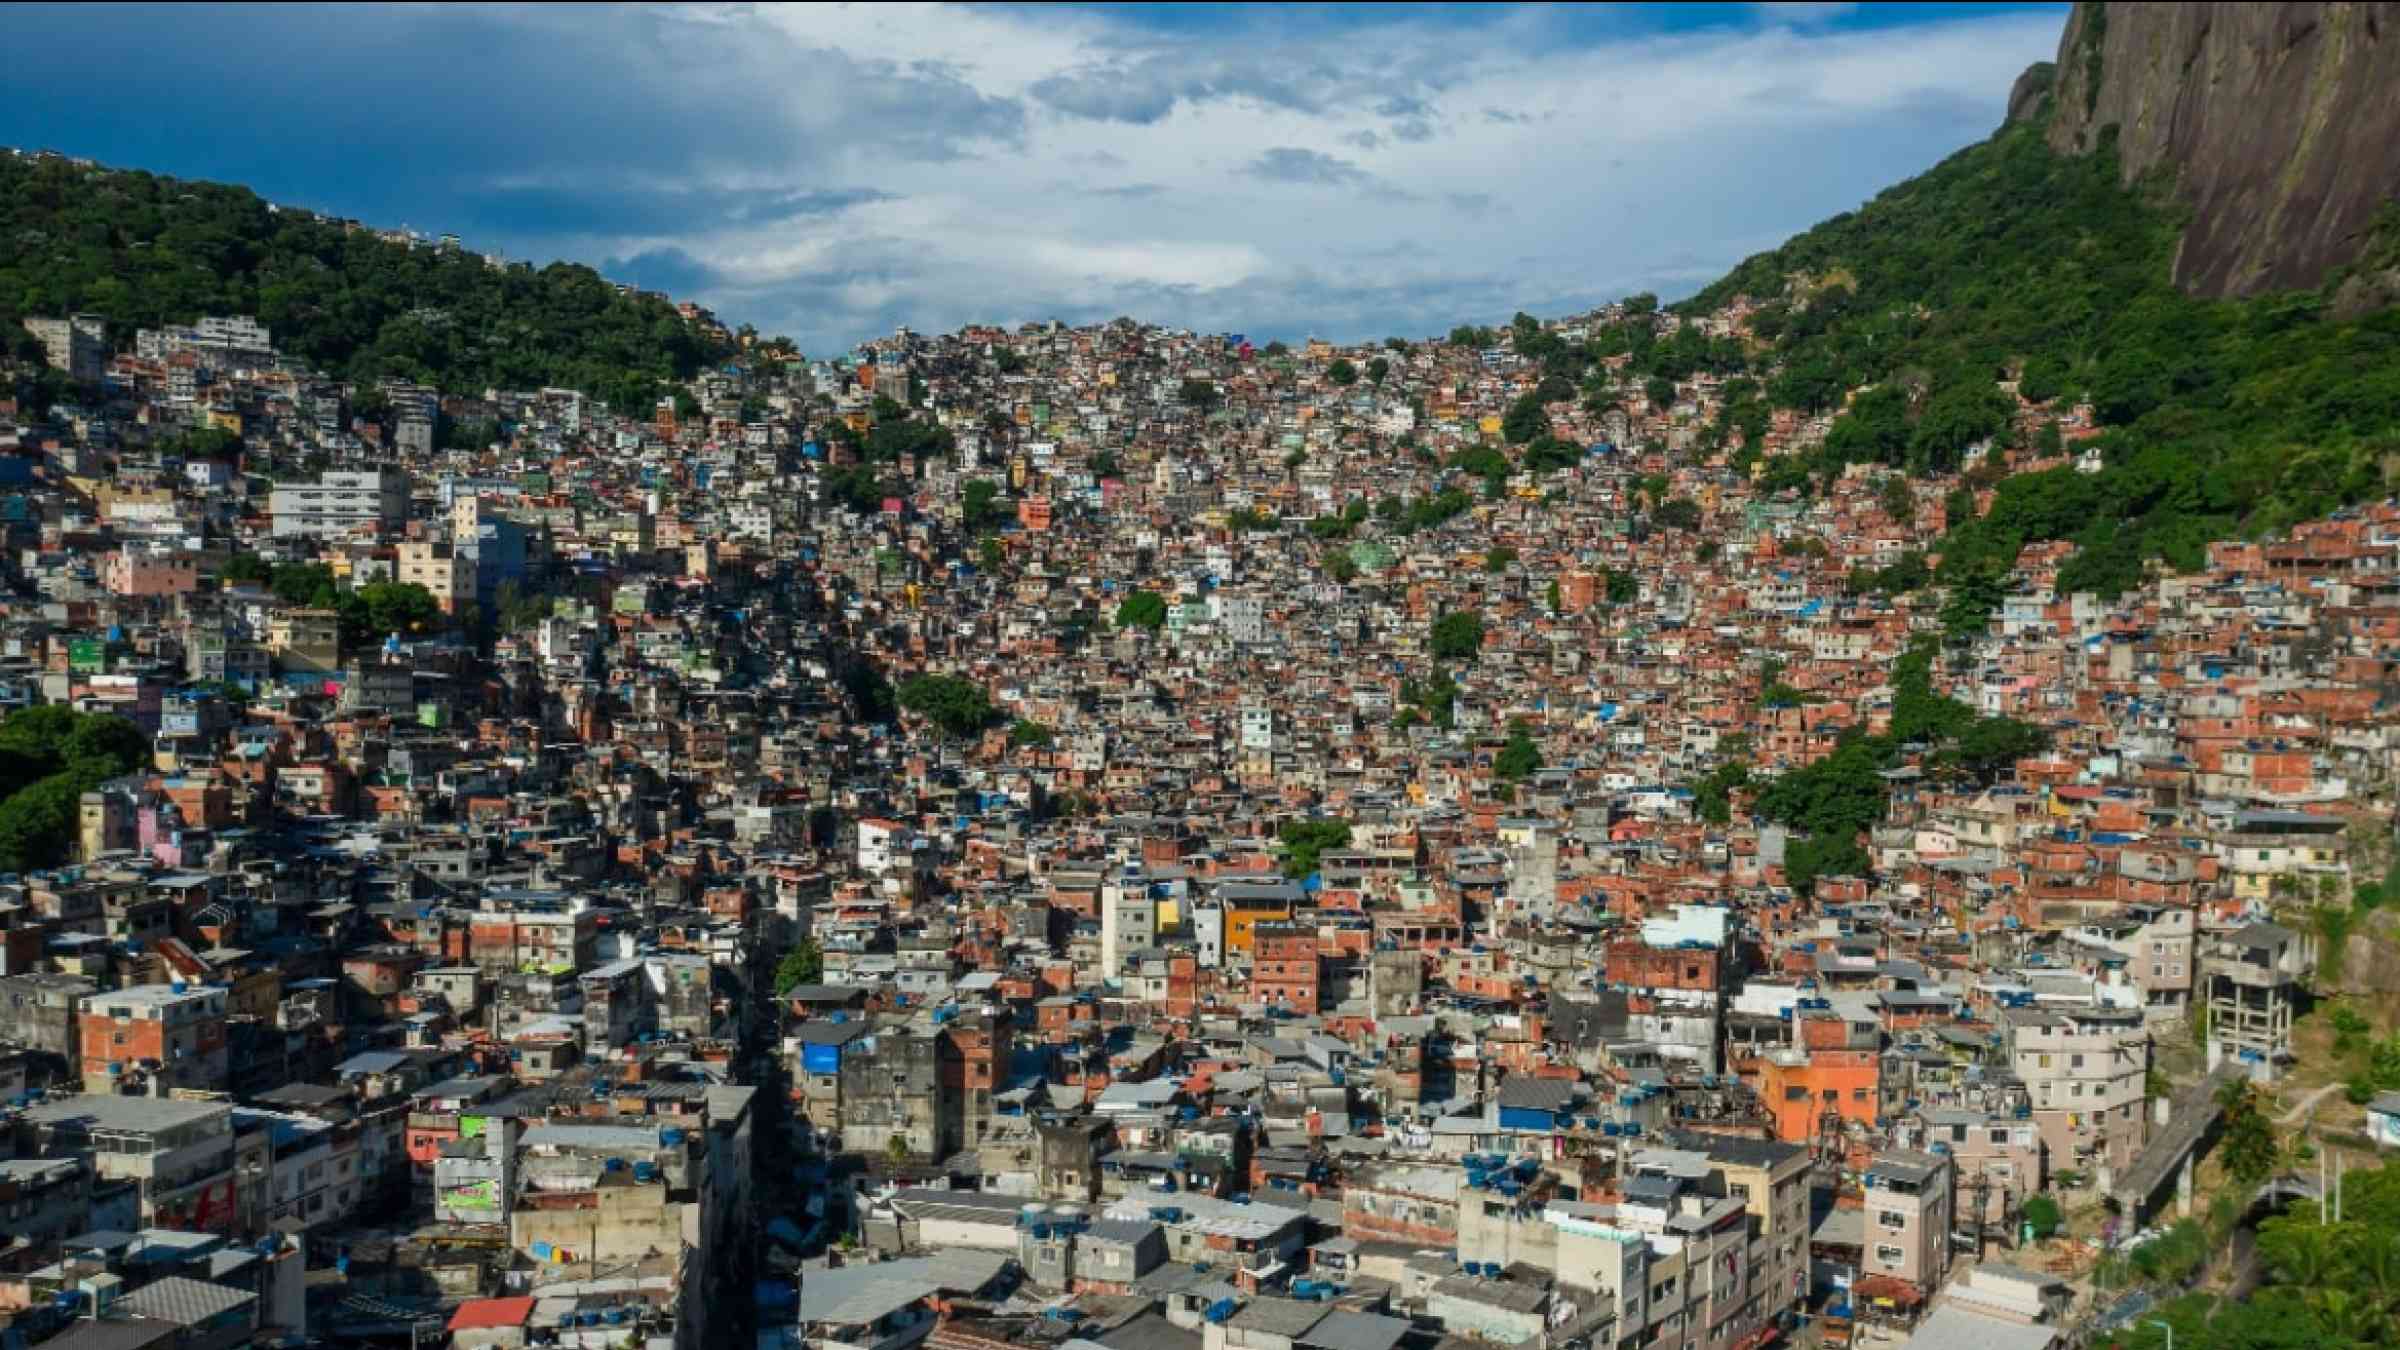 Aerial view of a massive Rocinha favela in Sao Conrado, Rio de Janeiro/Brazil